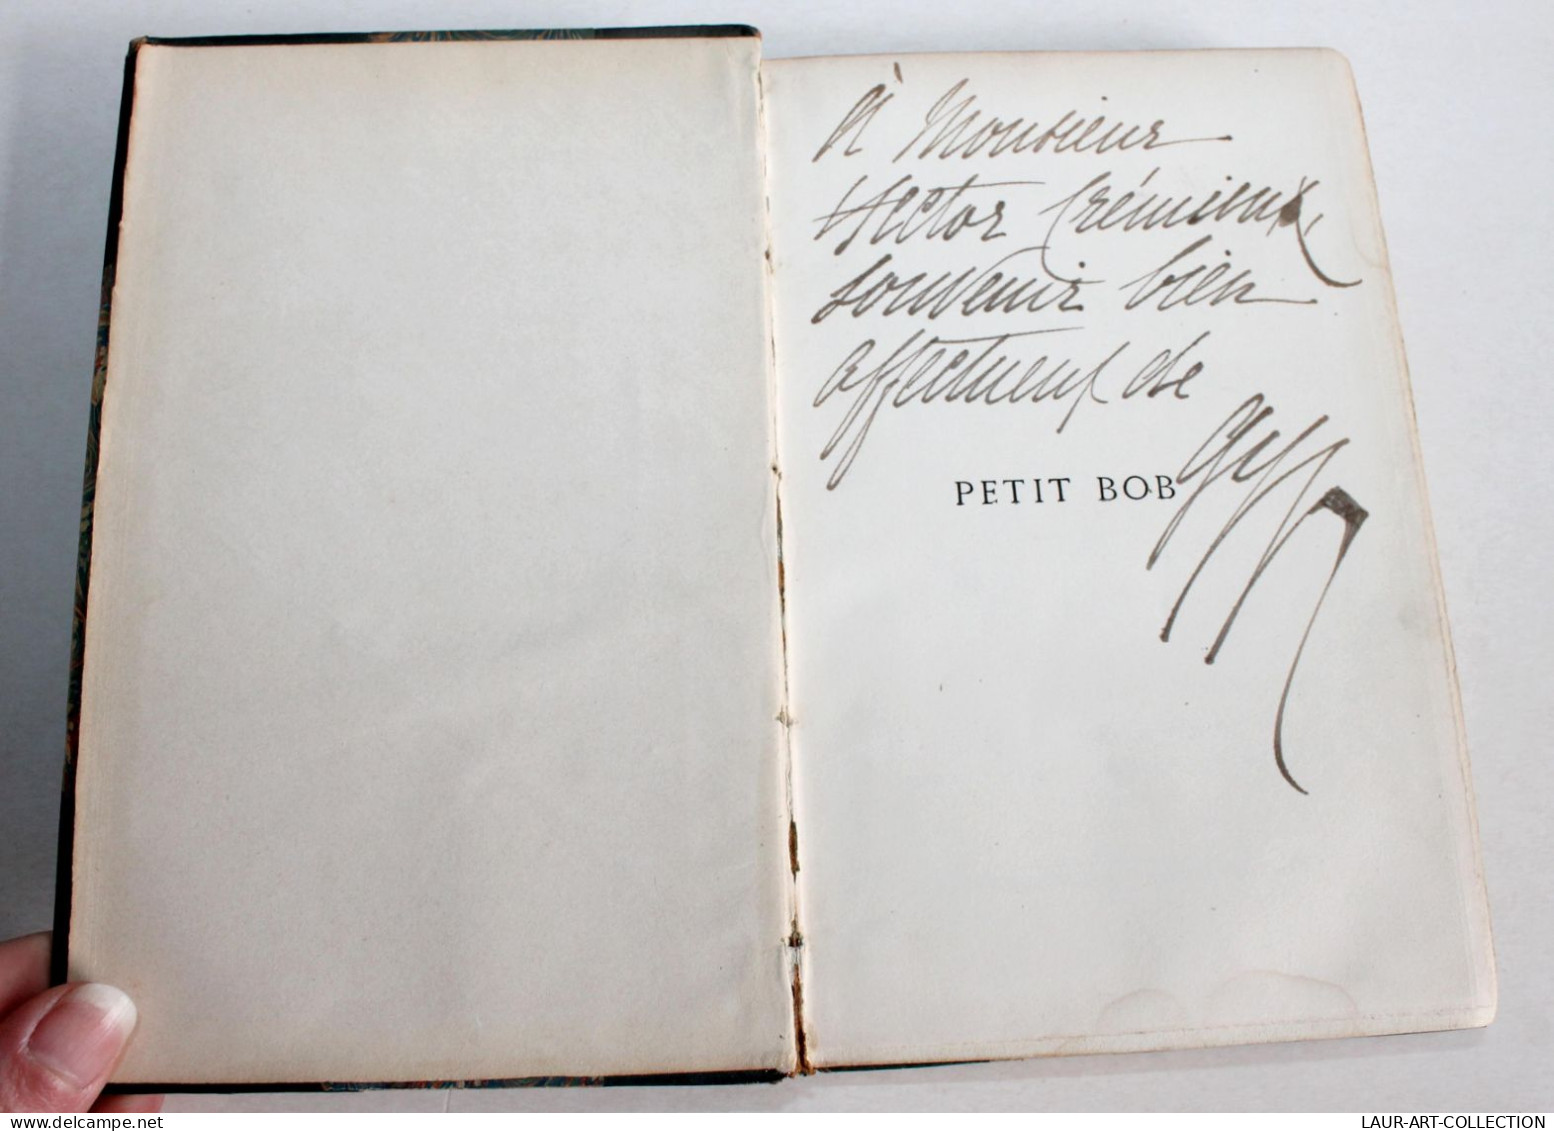 RARE DÉDICACÉ Par L'AUTEUR! PETIT BOB De GYP 1882 CALMANN LEVY EDIT / ANCIEN LIVRE XIXe SIECLE (1803.27) - Livres Dédicacés